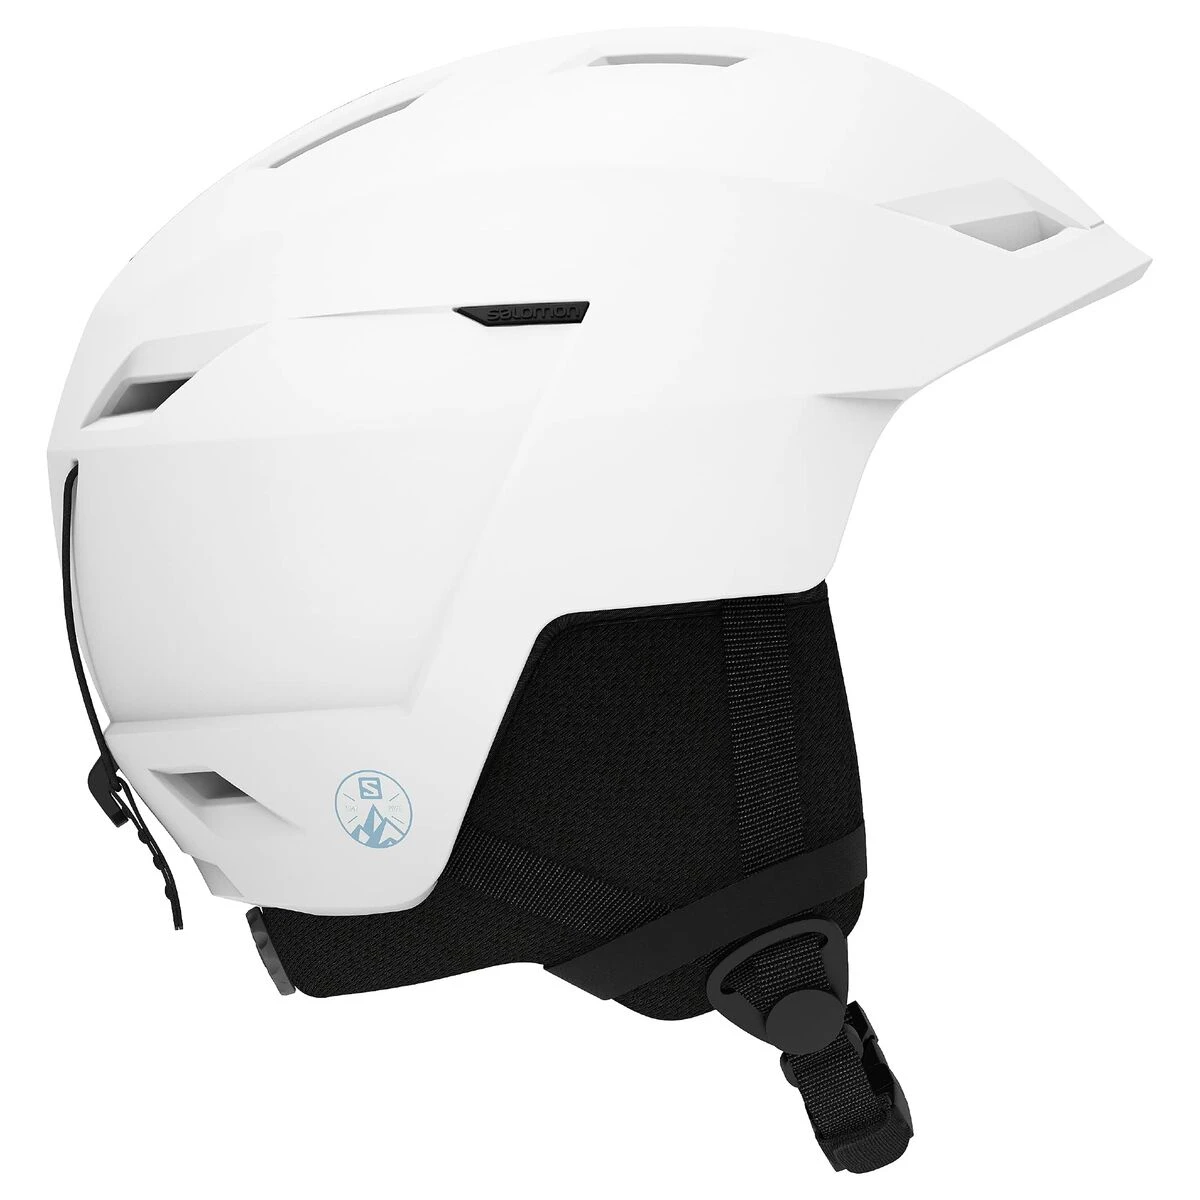 A white ski helmet